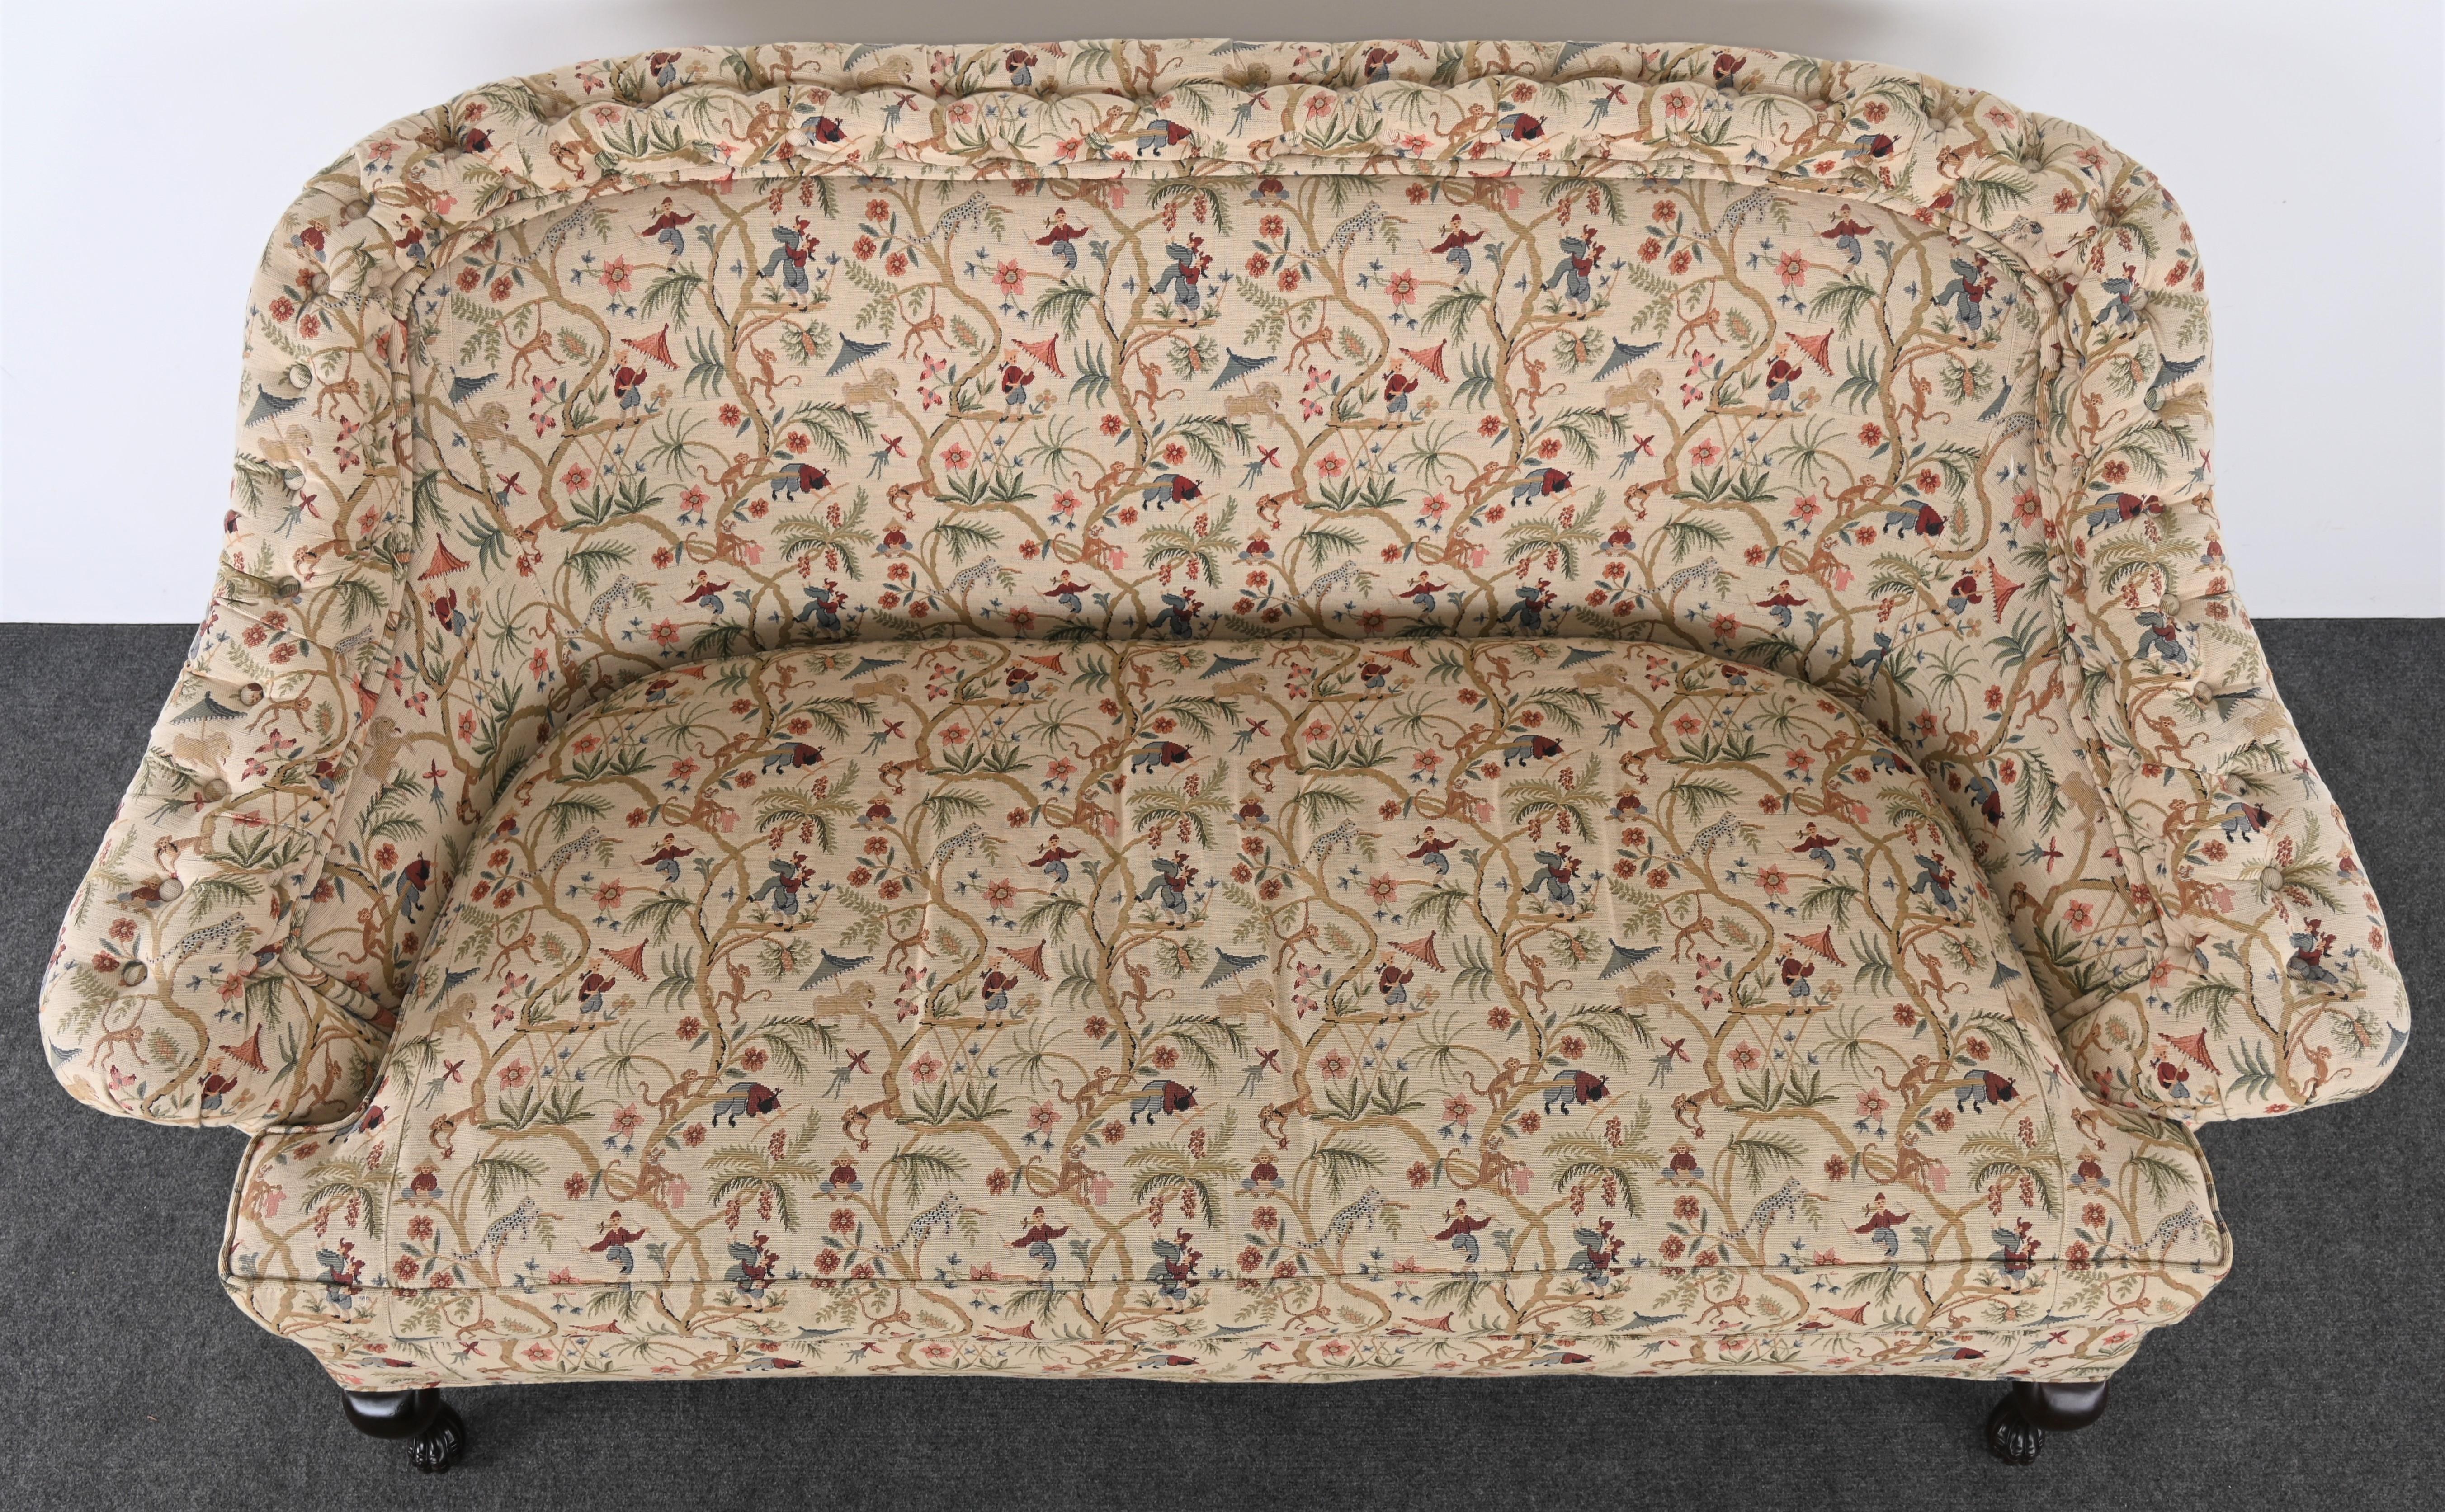 Late Victorian Knight's Bridge Sofa for Harrods Fine Furniture Collection, 20th Century